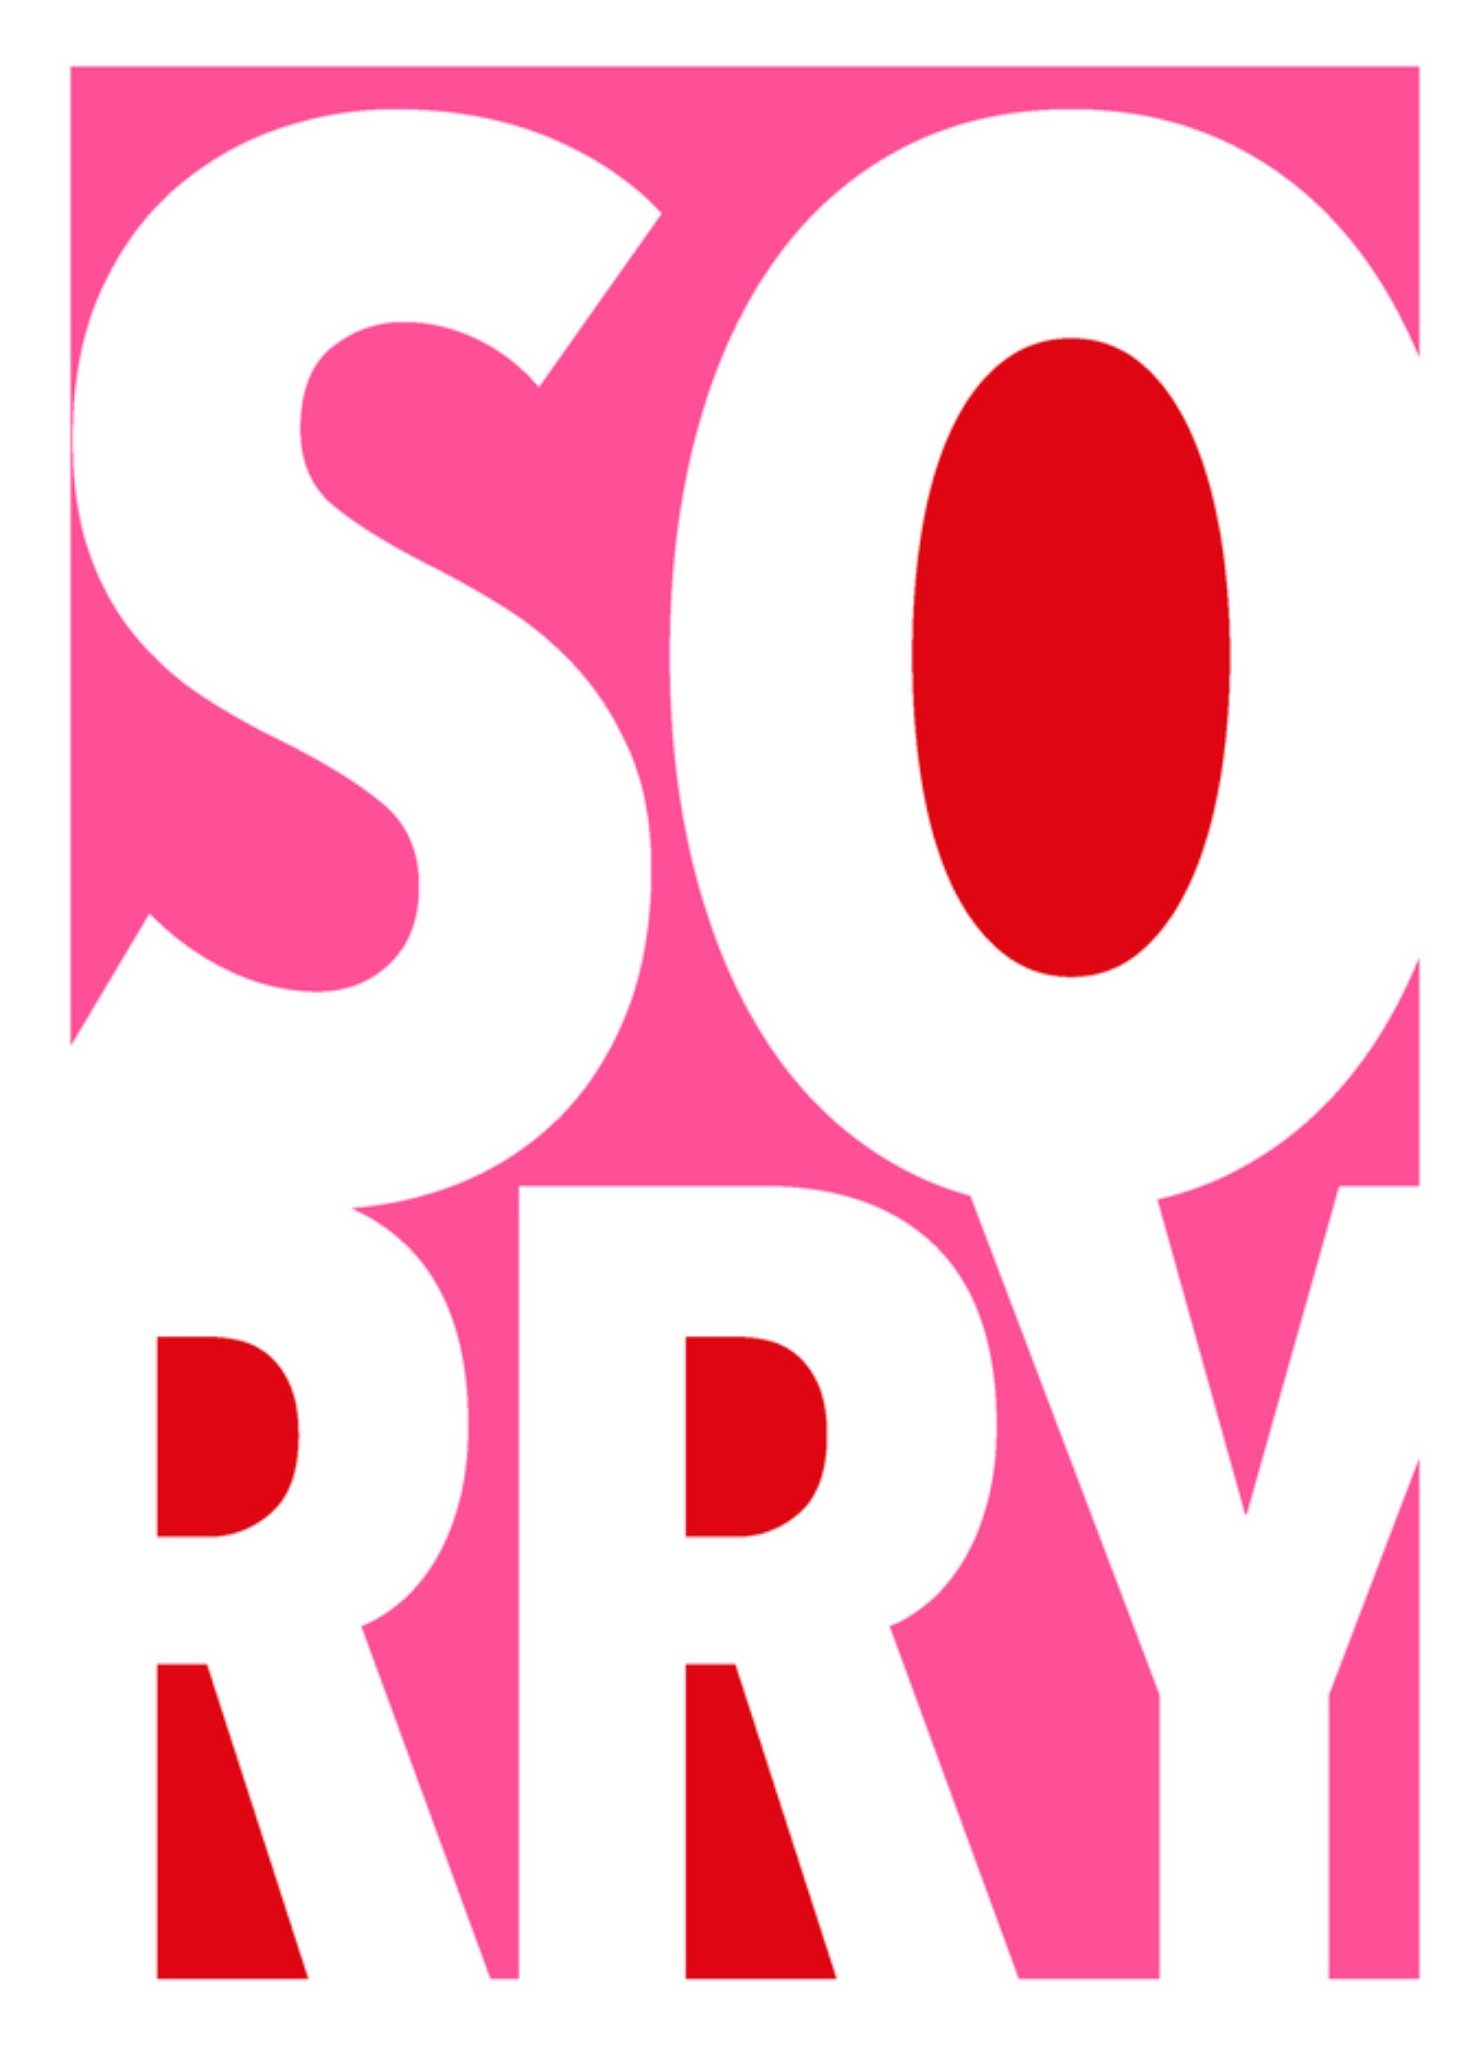 Greetz - Sorry kaart - roze - letters